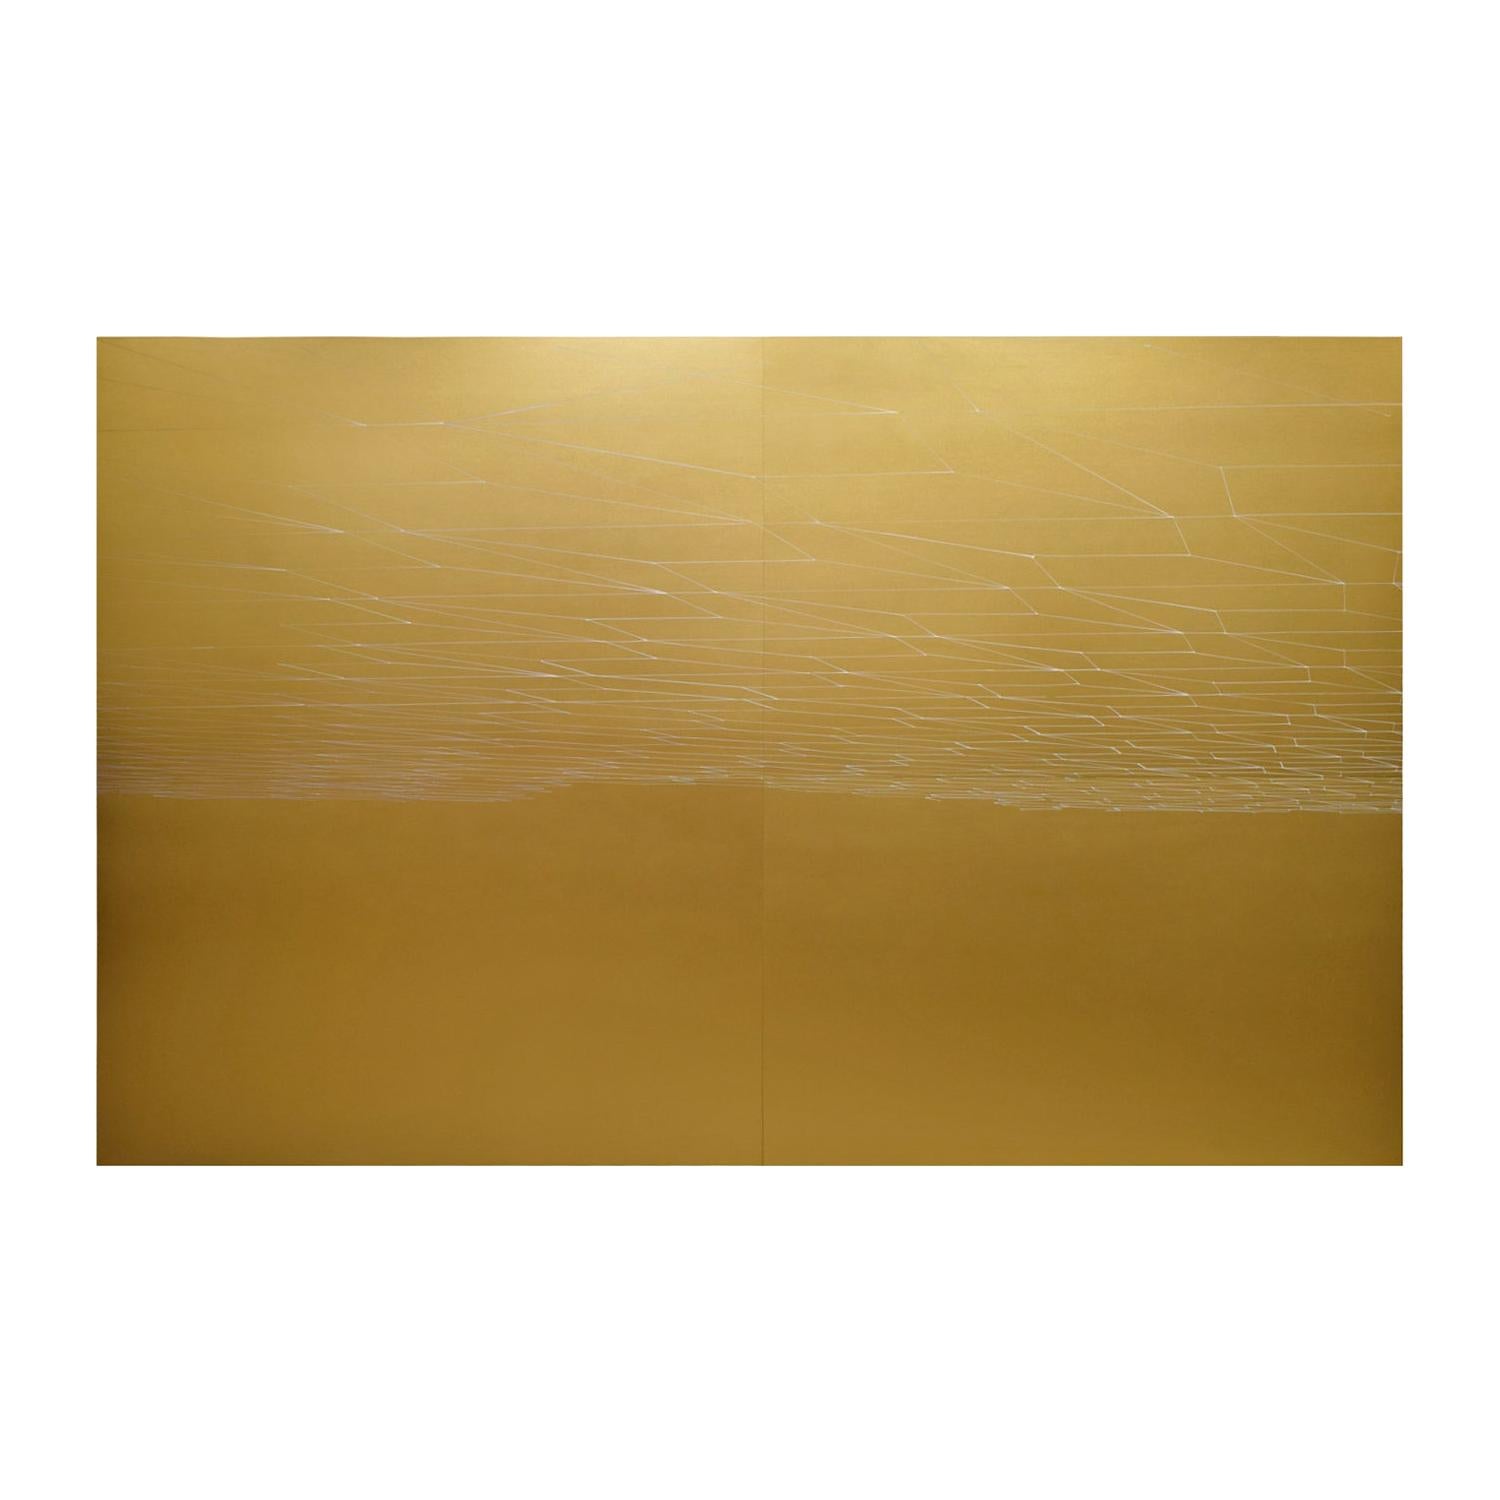 Kate Shepherd "Gold Double Sun Set" Large Painting on Wood Panels 2007 ‘Signed’